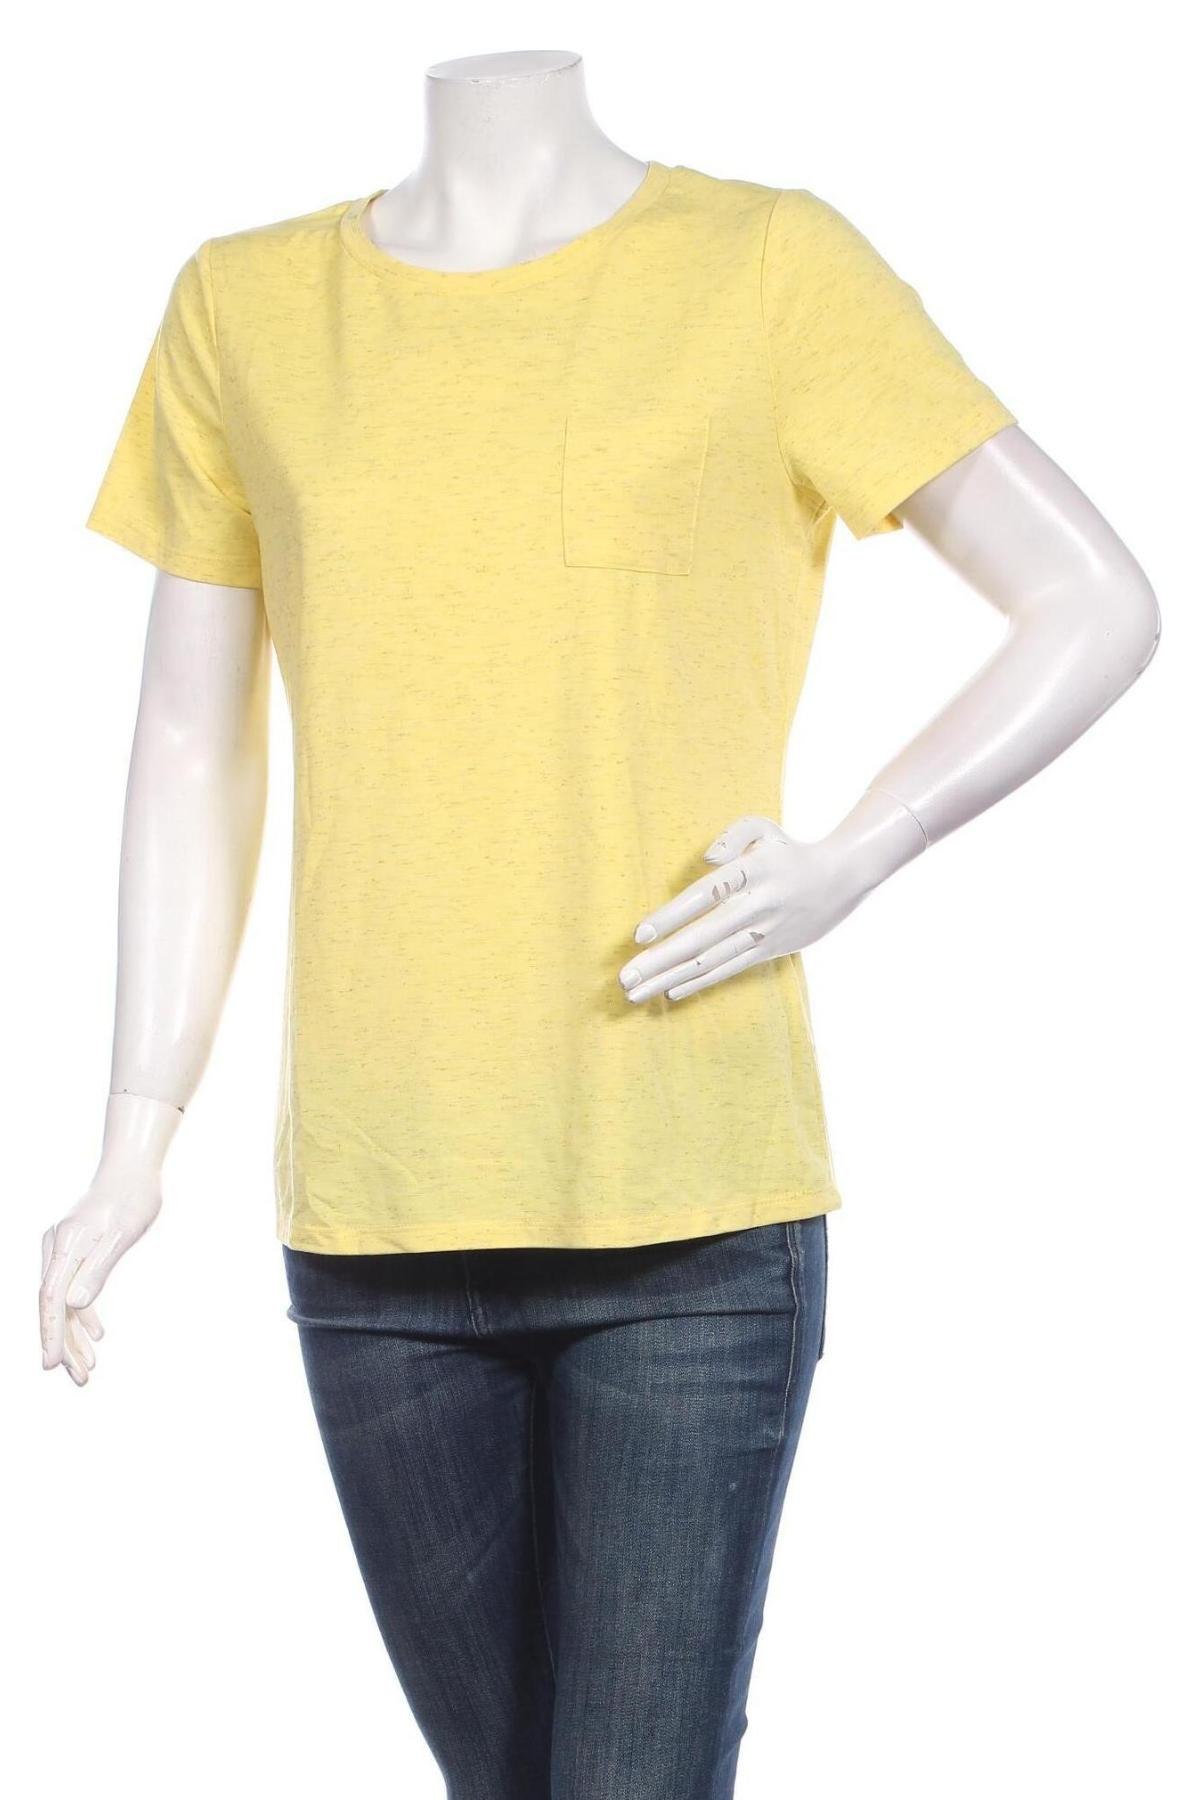 Γυναικείο t-shirt Ichi, Μέγεθος M, Χρώμα Κίτρινο, 46% πολυεστέρας, 46% βισκόζη, 5% ελαστάνη, Τιμή 25,26 €